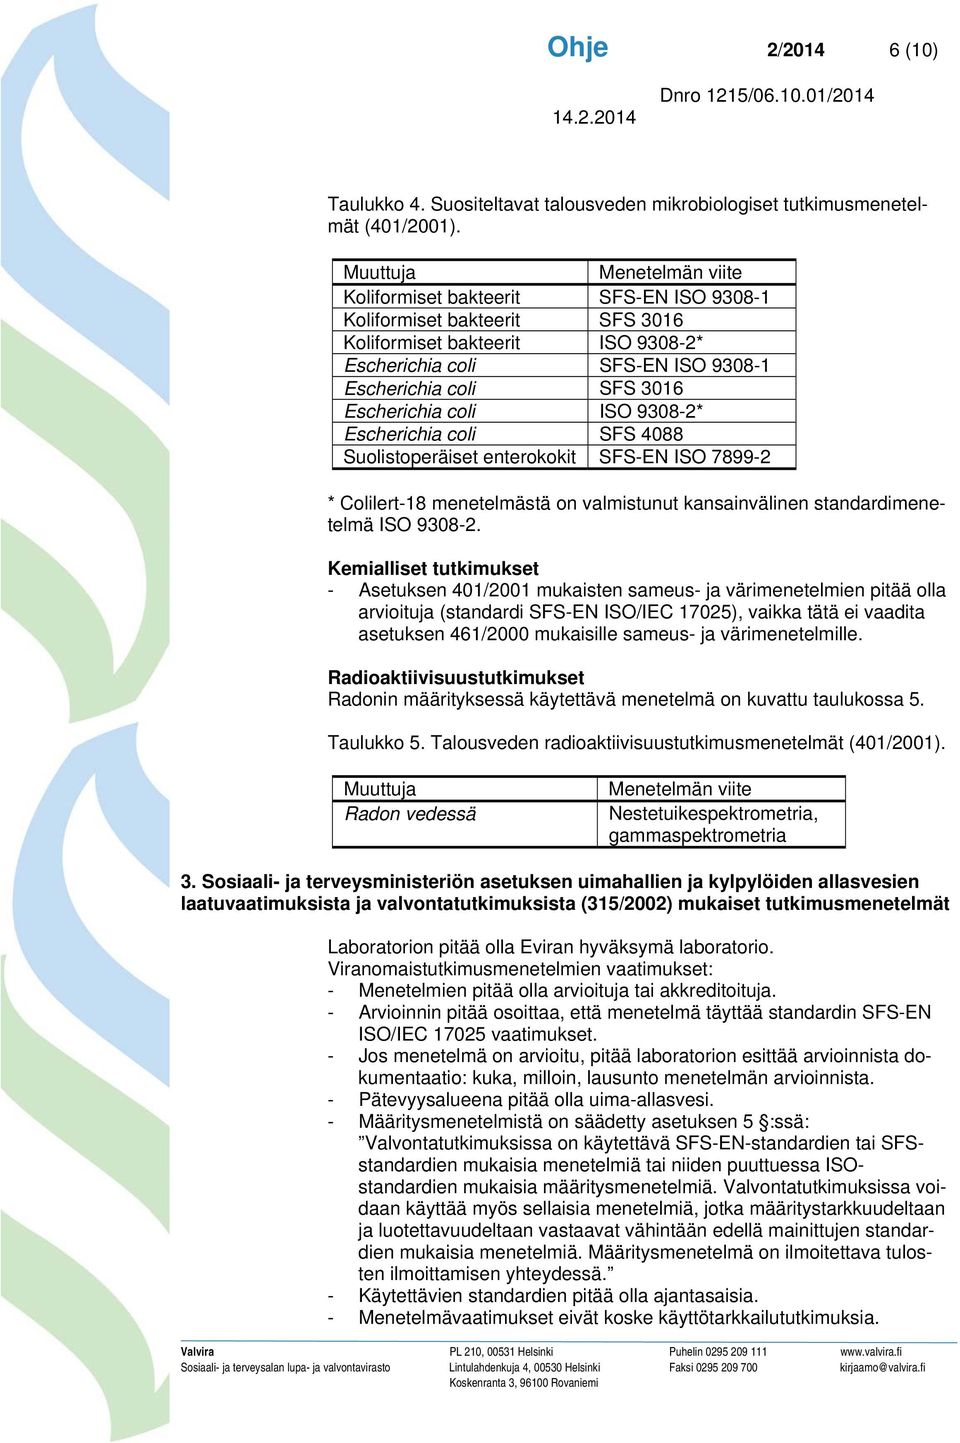 Escherichia coli SFS 4088 Suolistoperäiset enterokokit SFS-EN ISO 7899-2 * Colilert-18 menetelmästä on valmistunut kansainvälinen standardimenetelmä ISO 9308-2.